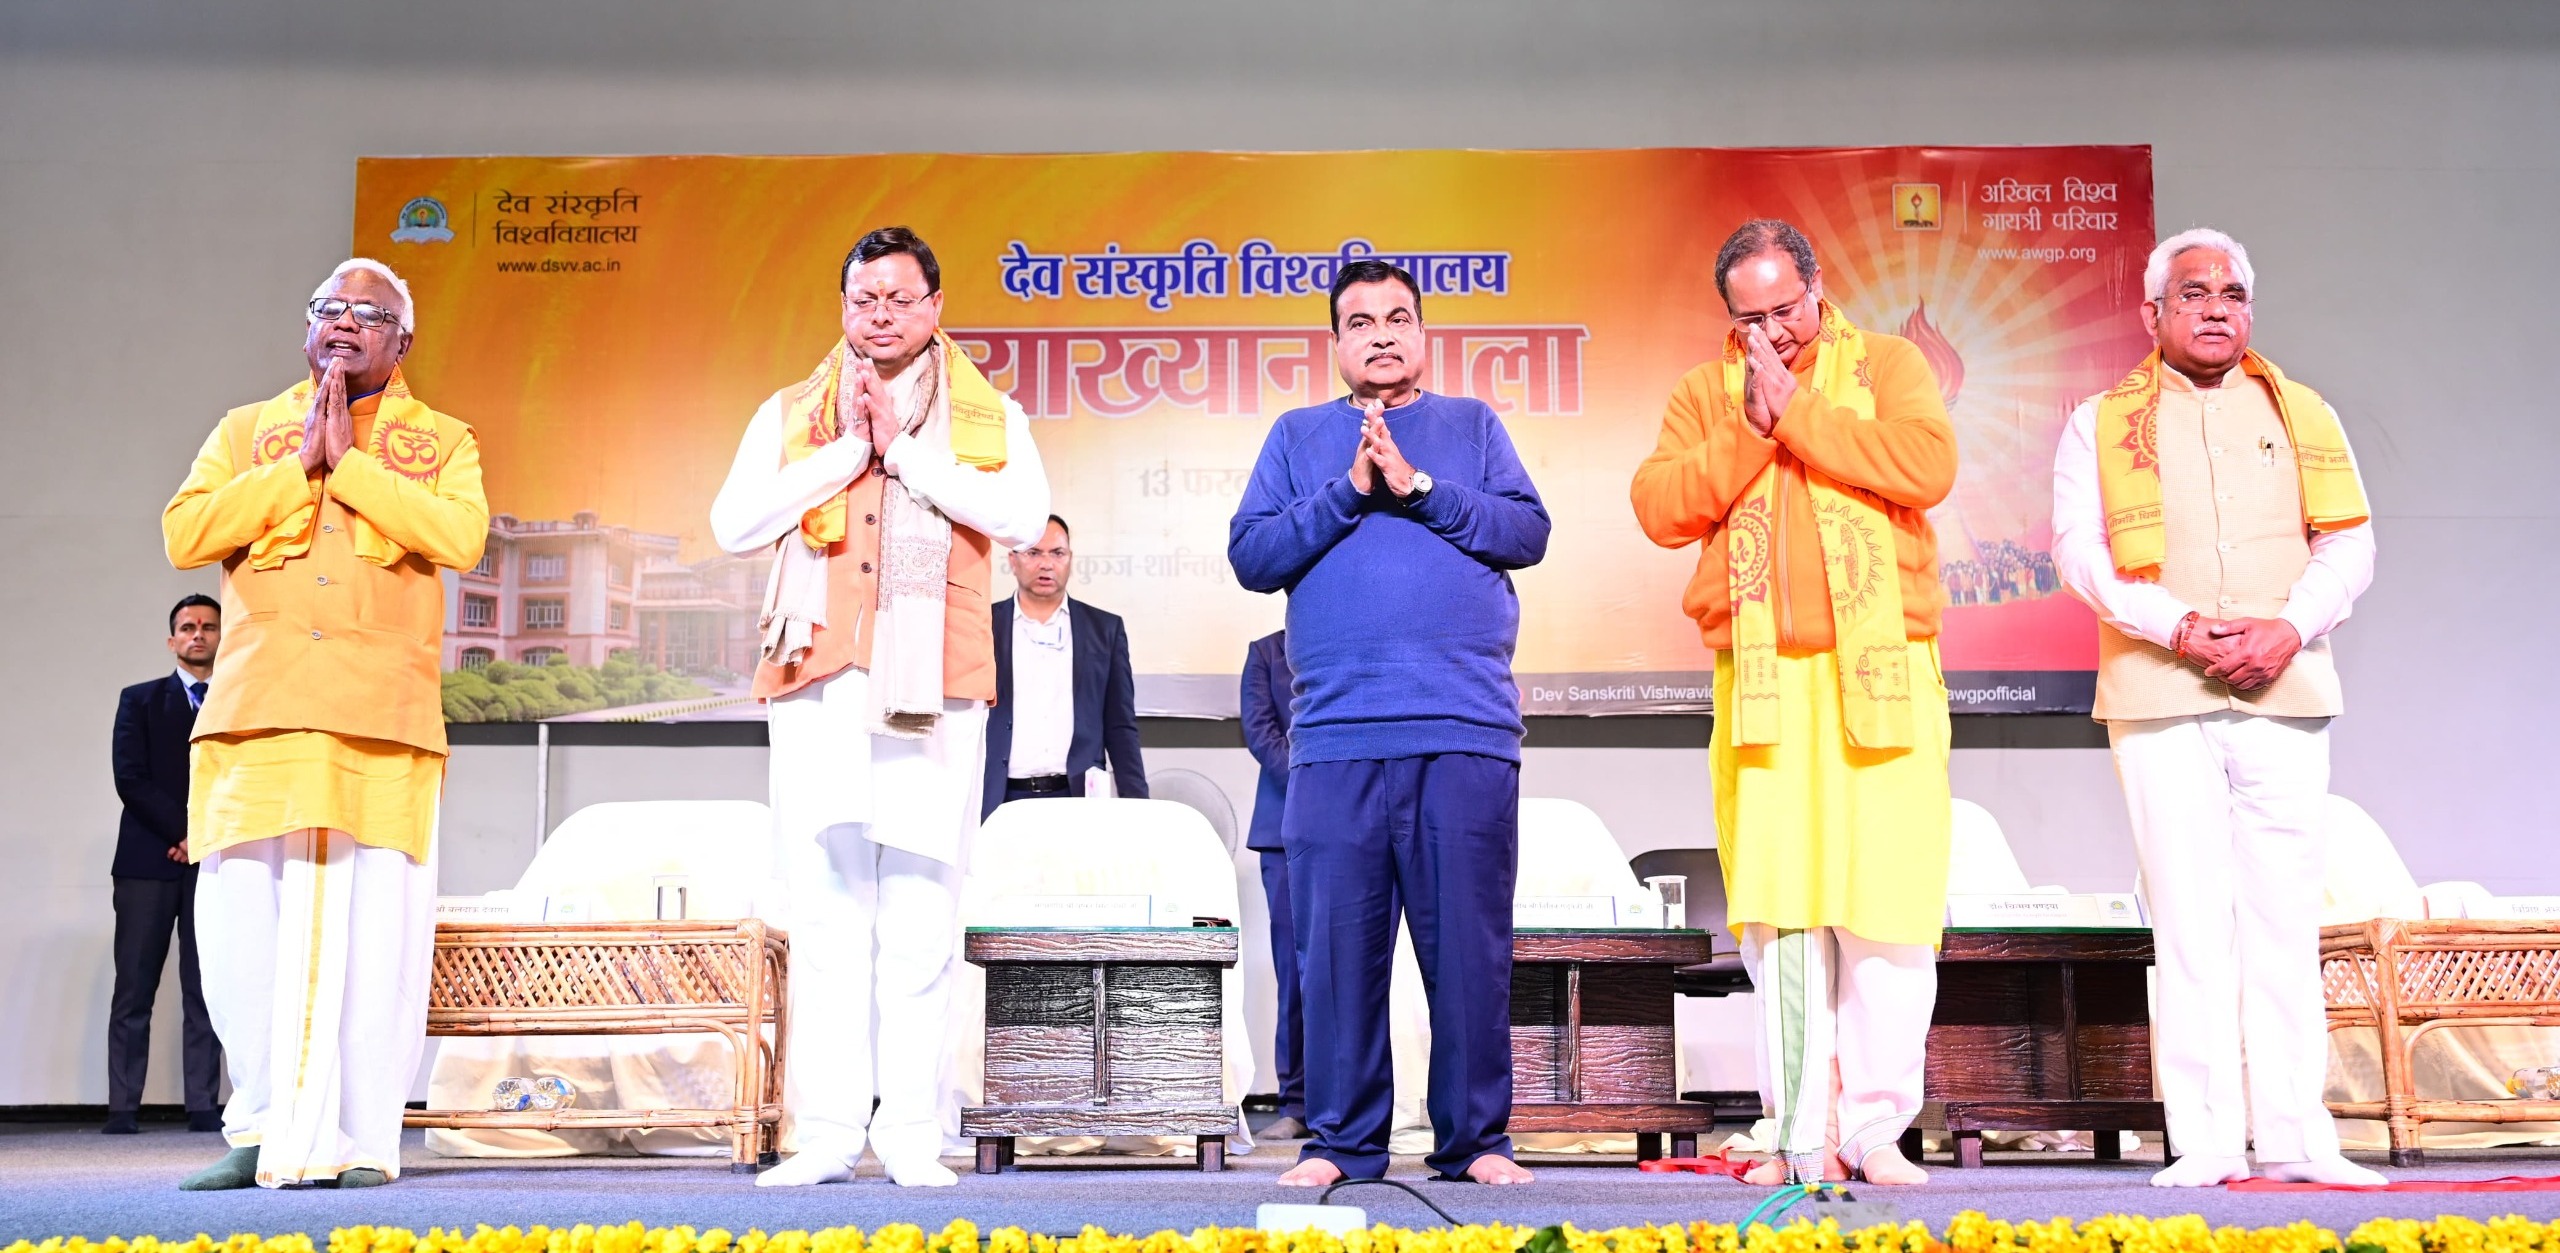 केंद्रीय मंत्री नितिन गडकरी और मुख्यमंत्री धामी ने देव संस्कृति विश्वविद्यालय के व्याख्यान माला कार्यक्रम में किया प्रतिभाग,,,।